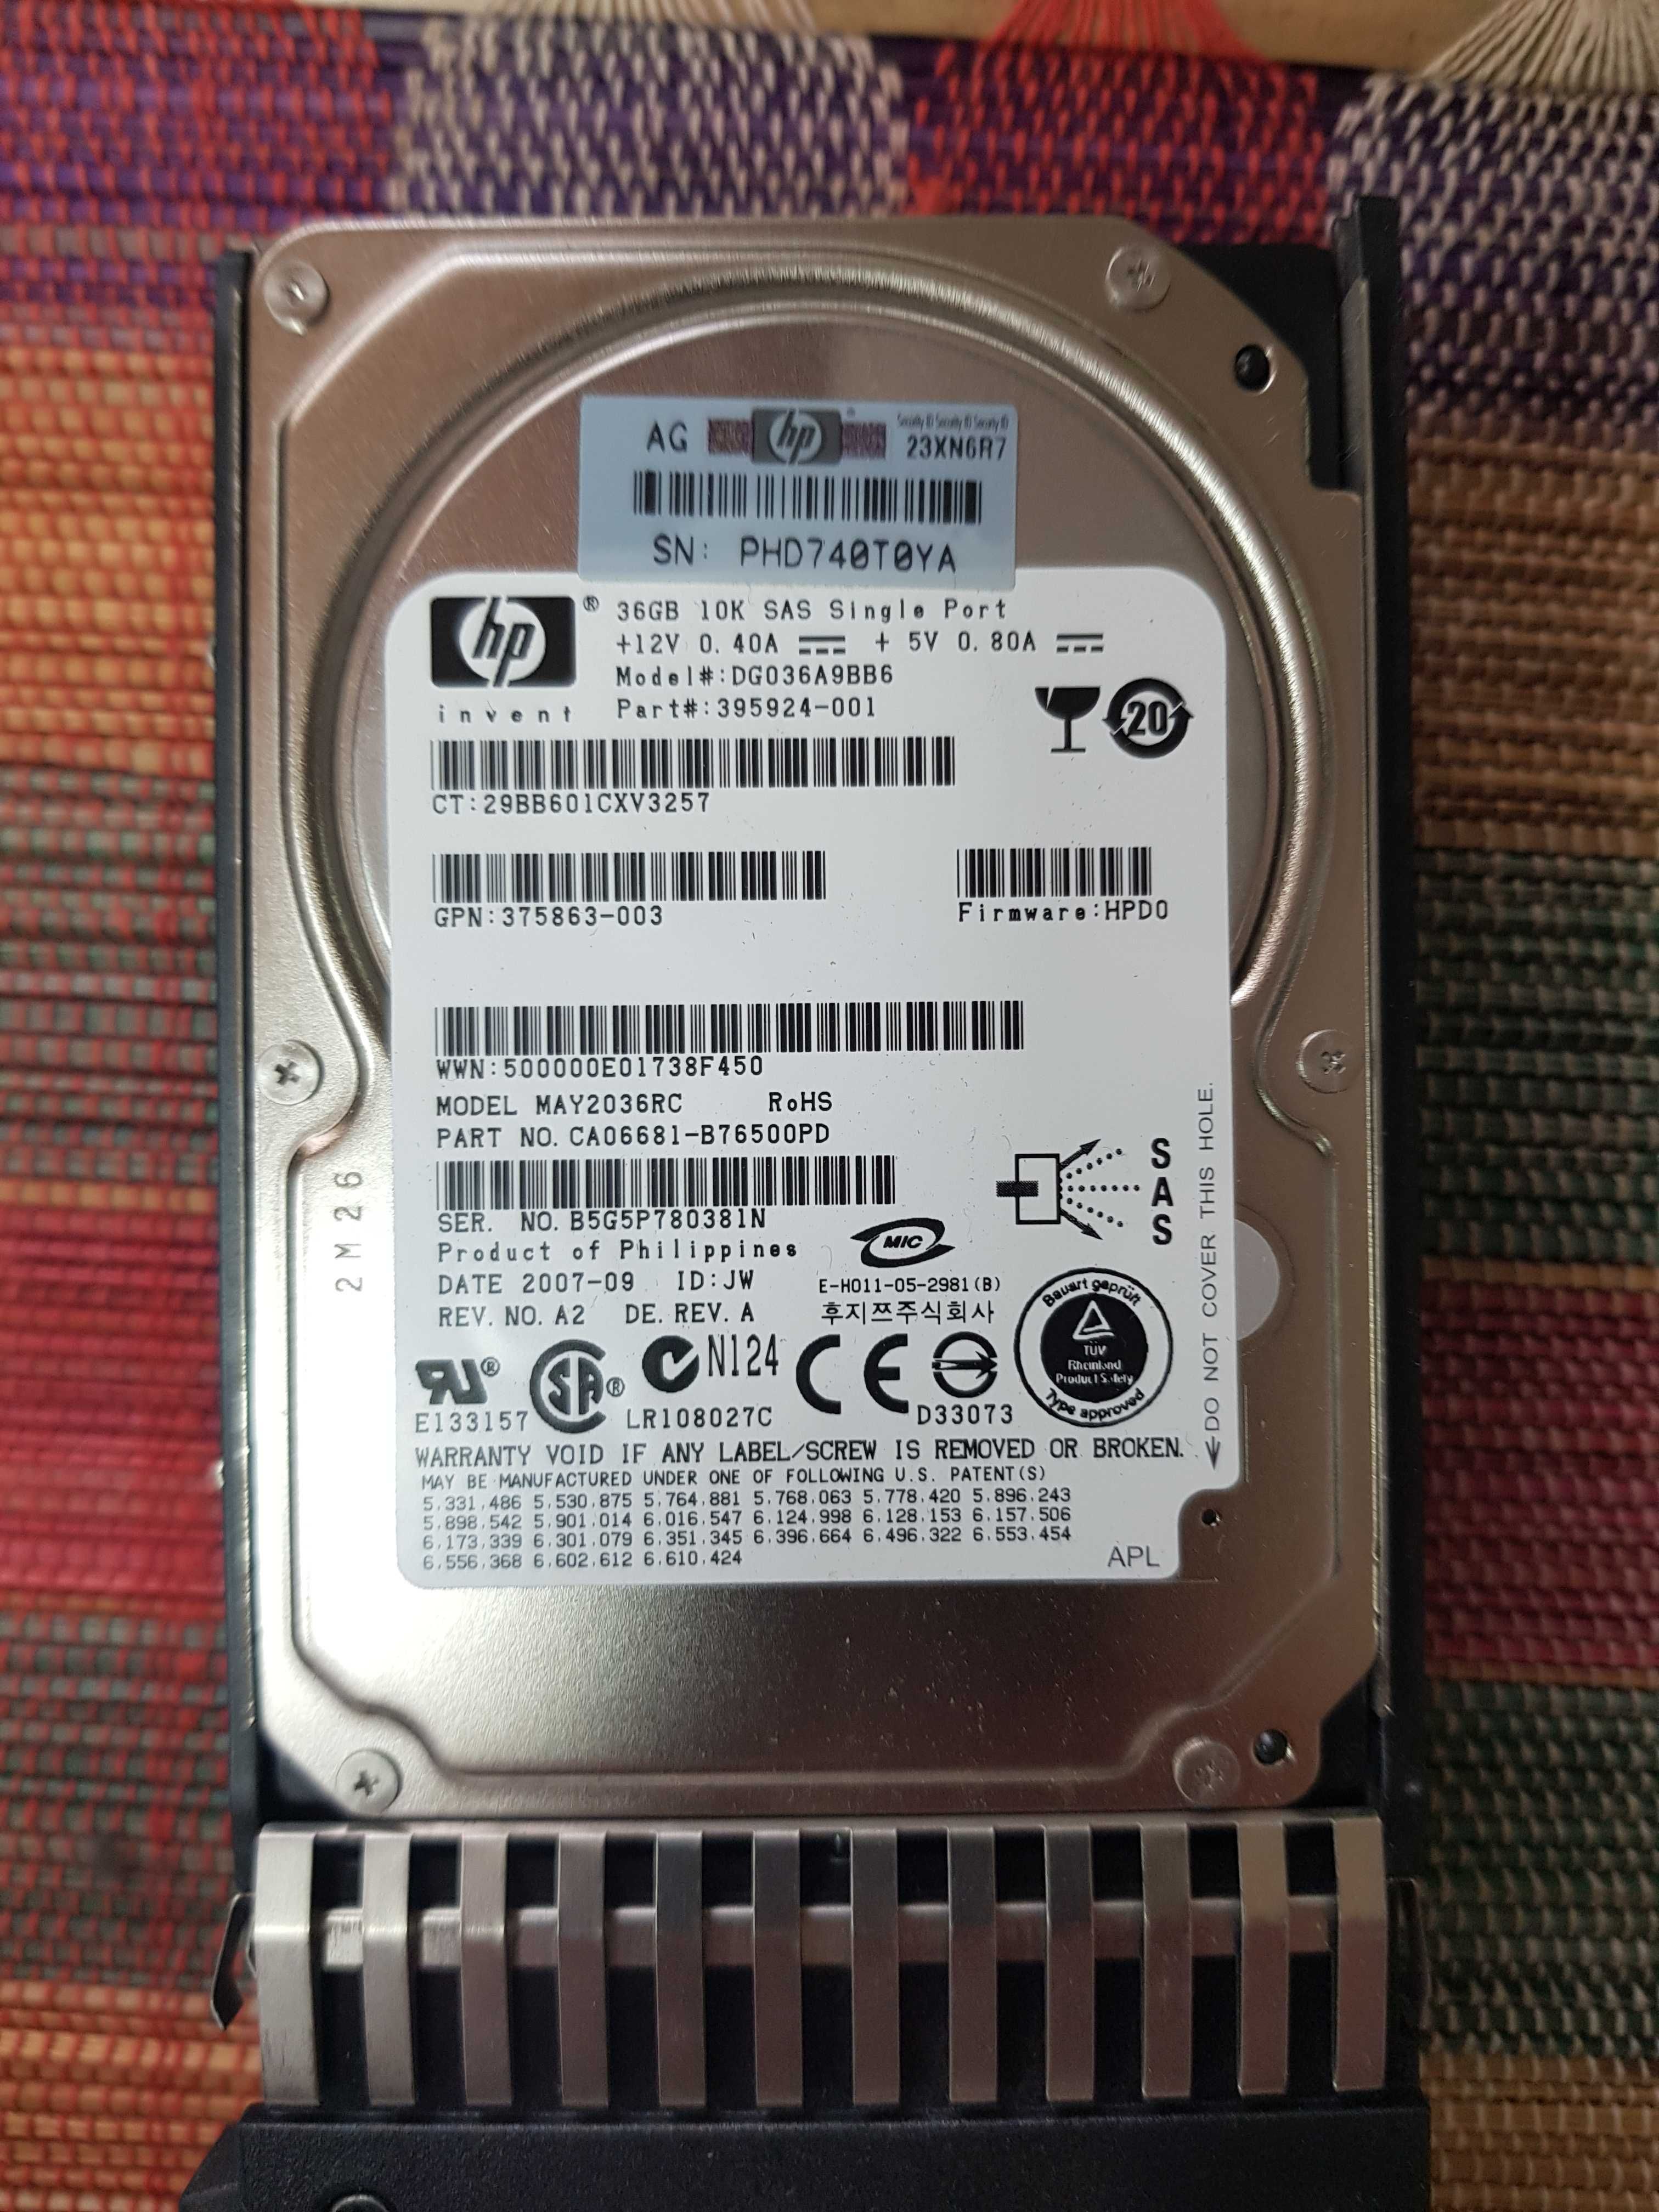 Жорсткий диск DG036A9BB6 HP 36GB 10K 2.5" SAS